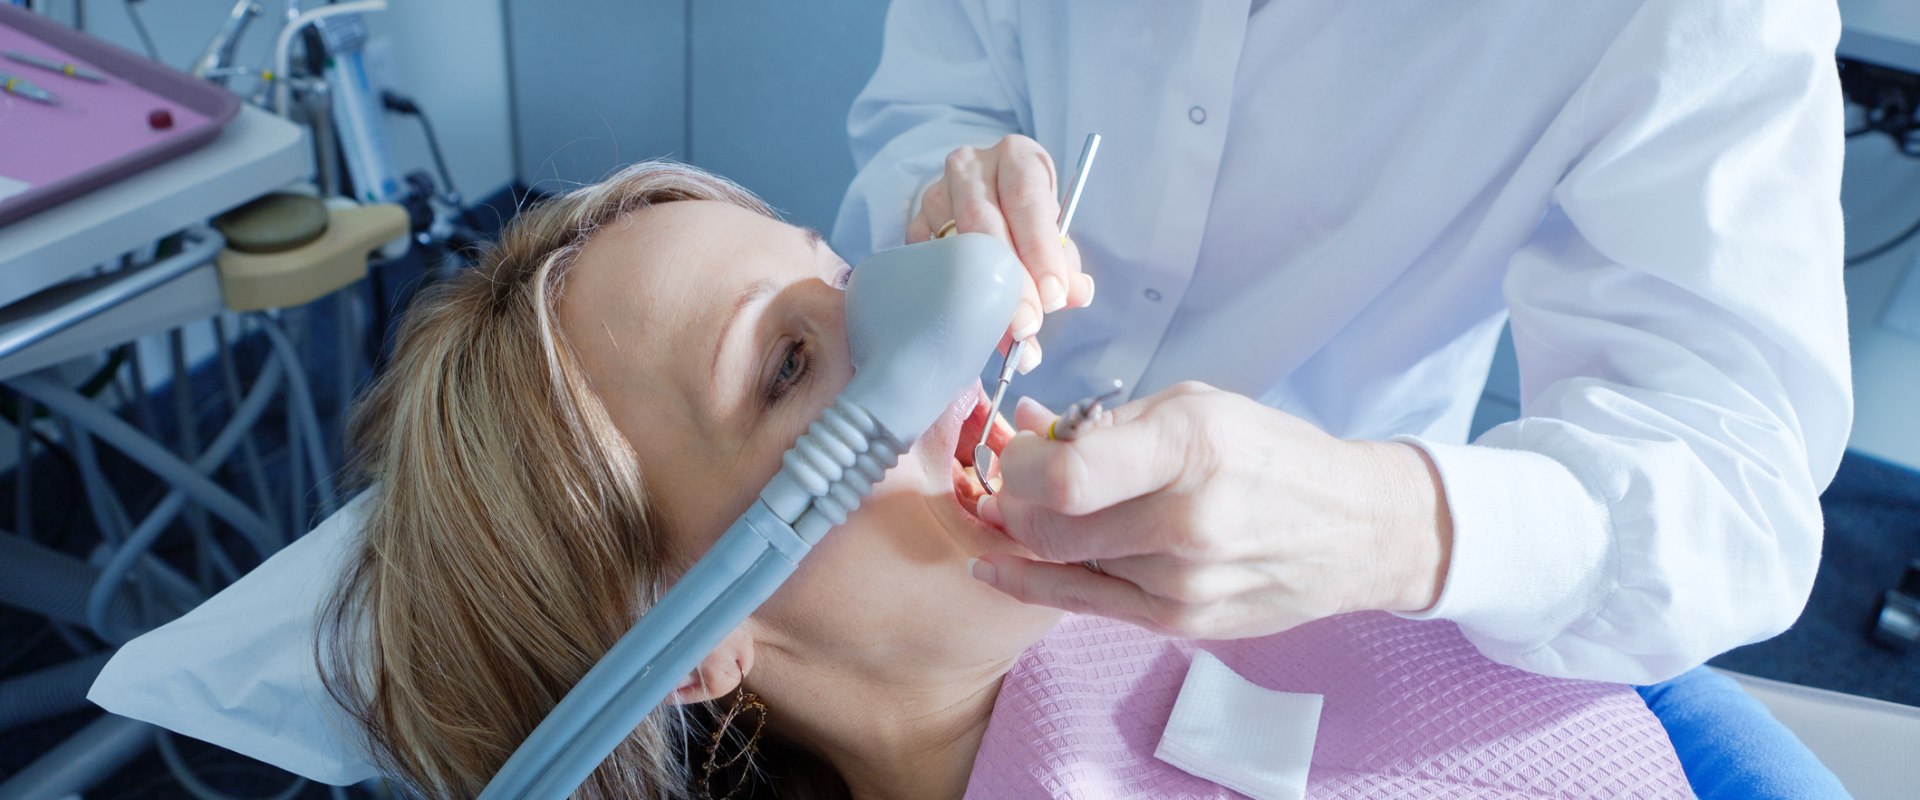 Can an Orthodontist Do Endodontics?